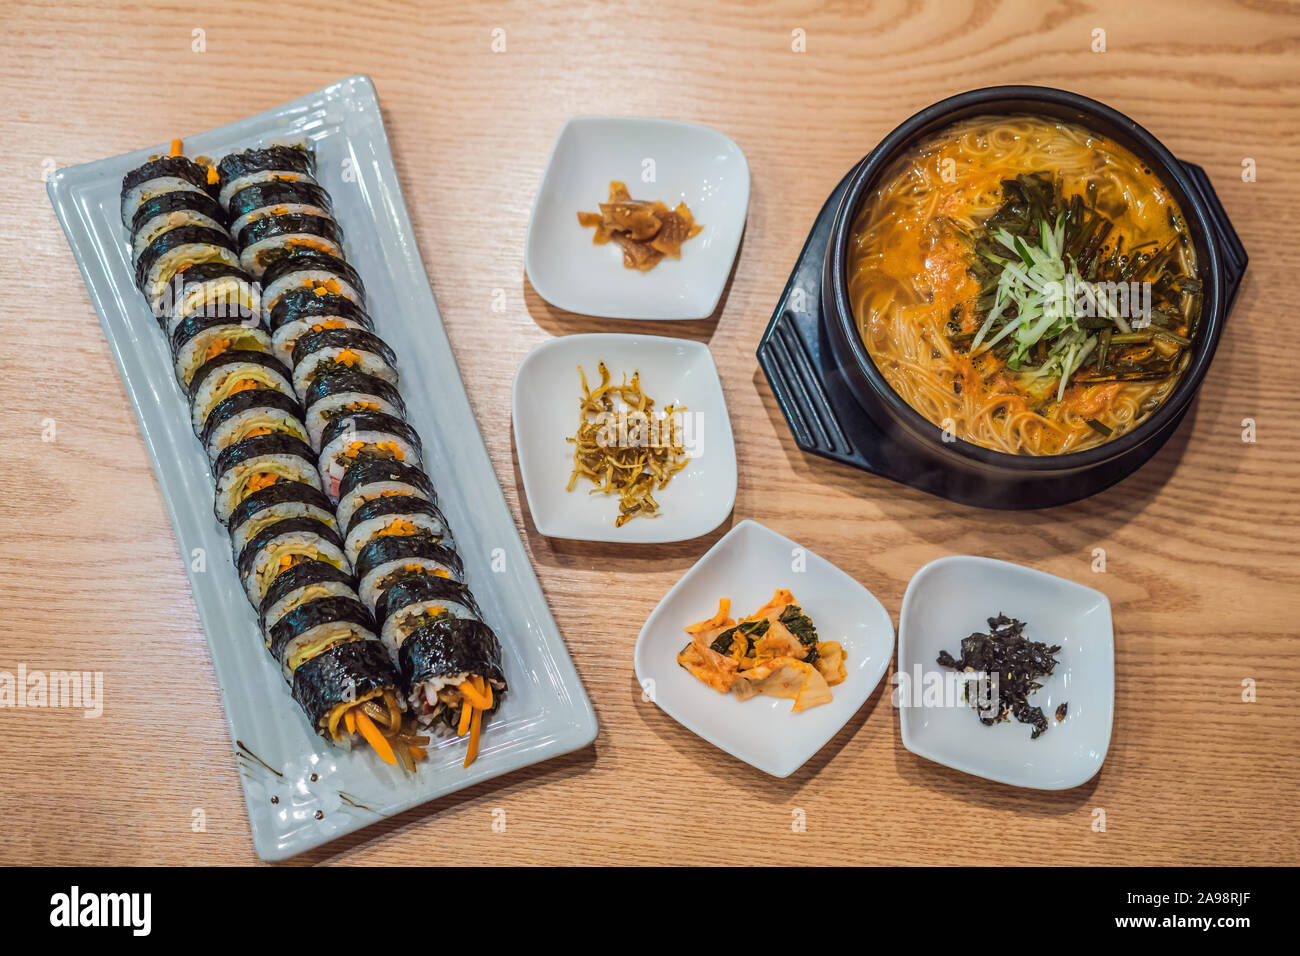 ramen noodles and gimbap meal national korean food Stock Photo